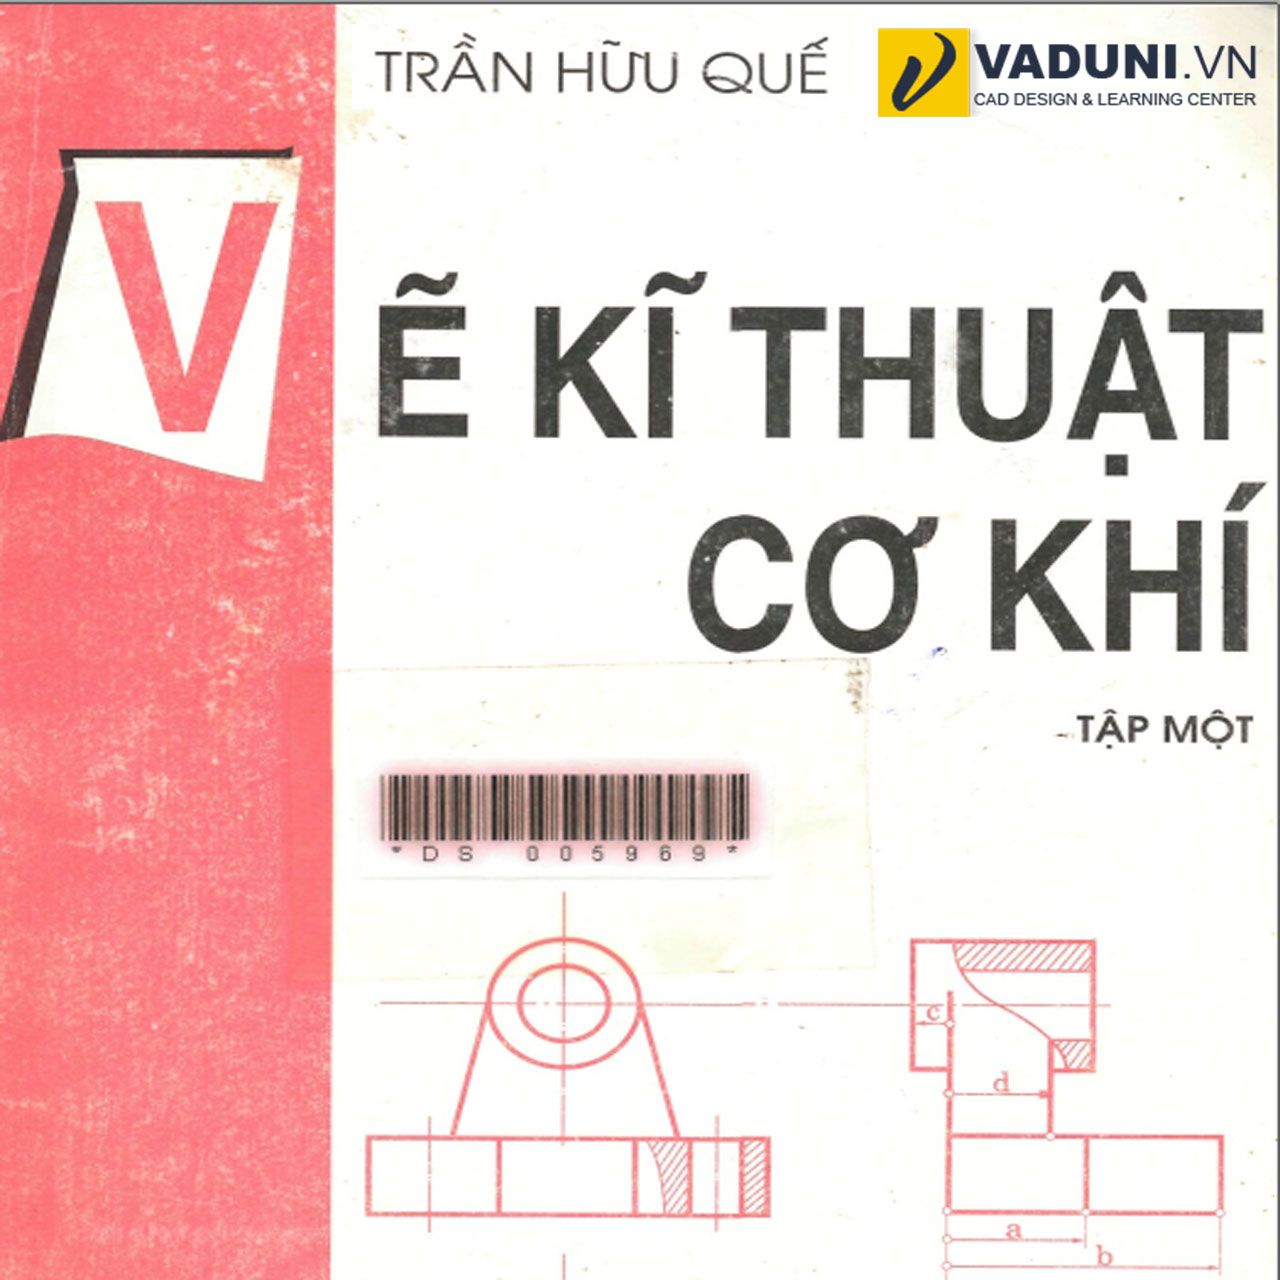 Sách Vẽ Kỹ Thuật Cơ Khí Tập 1 - Trần Hữu Quế - Vaduni.Vn